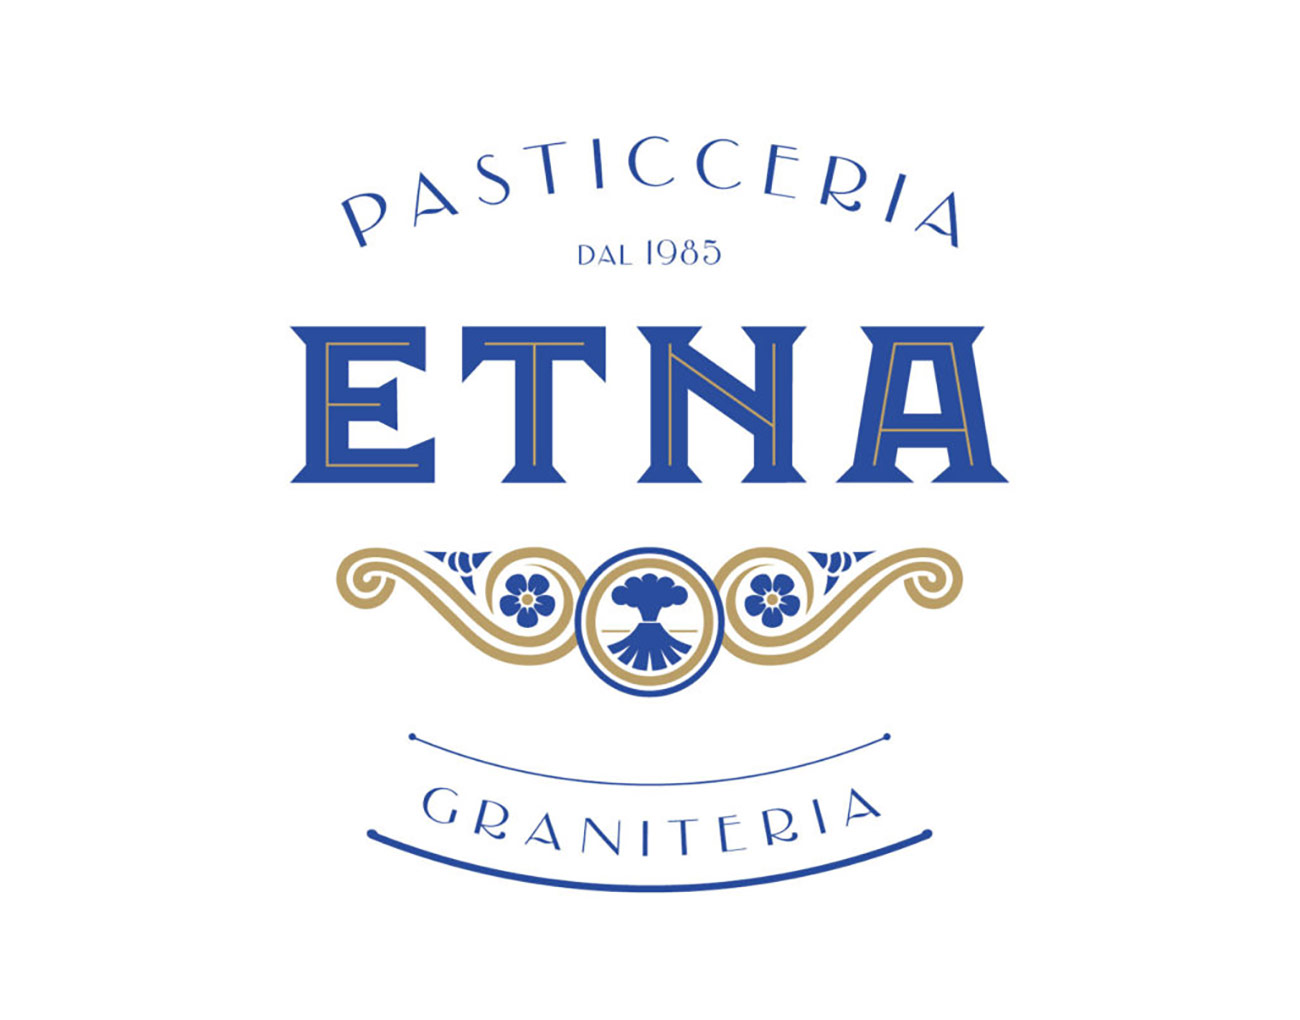 Etna Pasticceria Graniteria